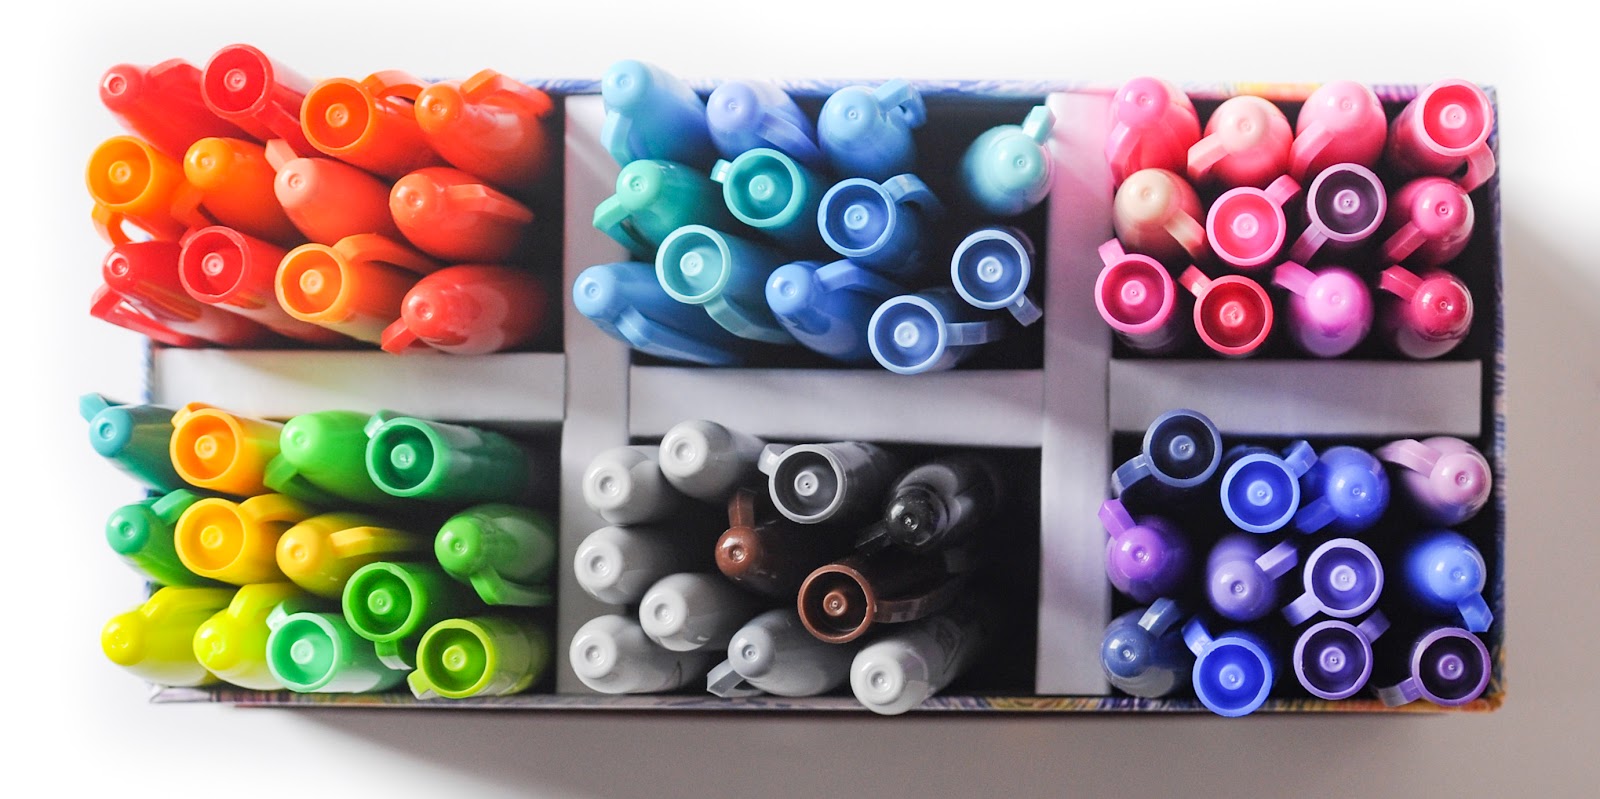 72 Derwent Inktense Colored Pencils